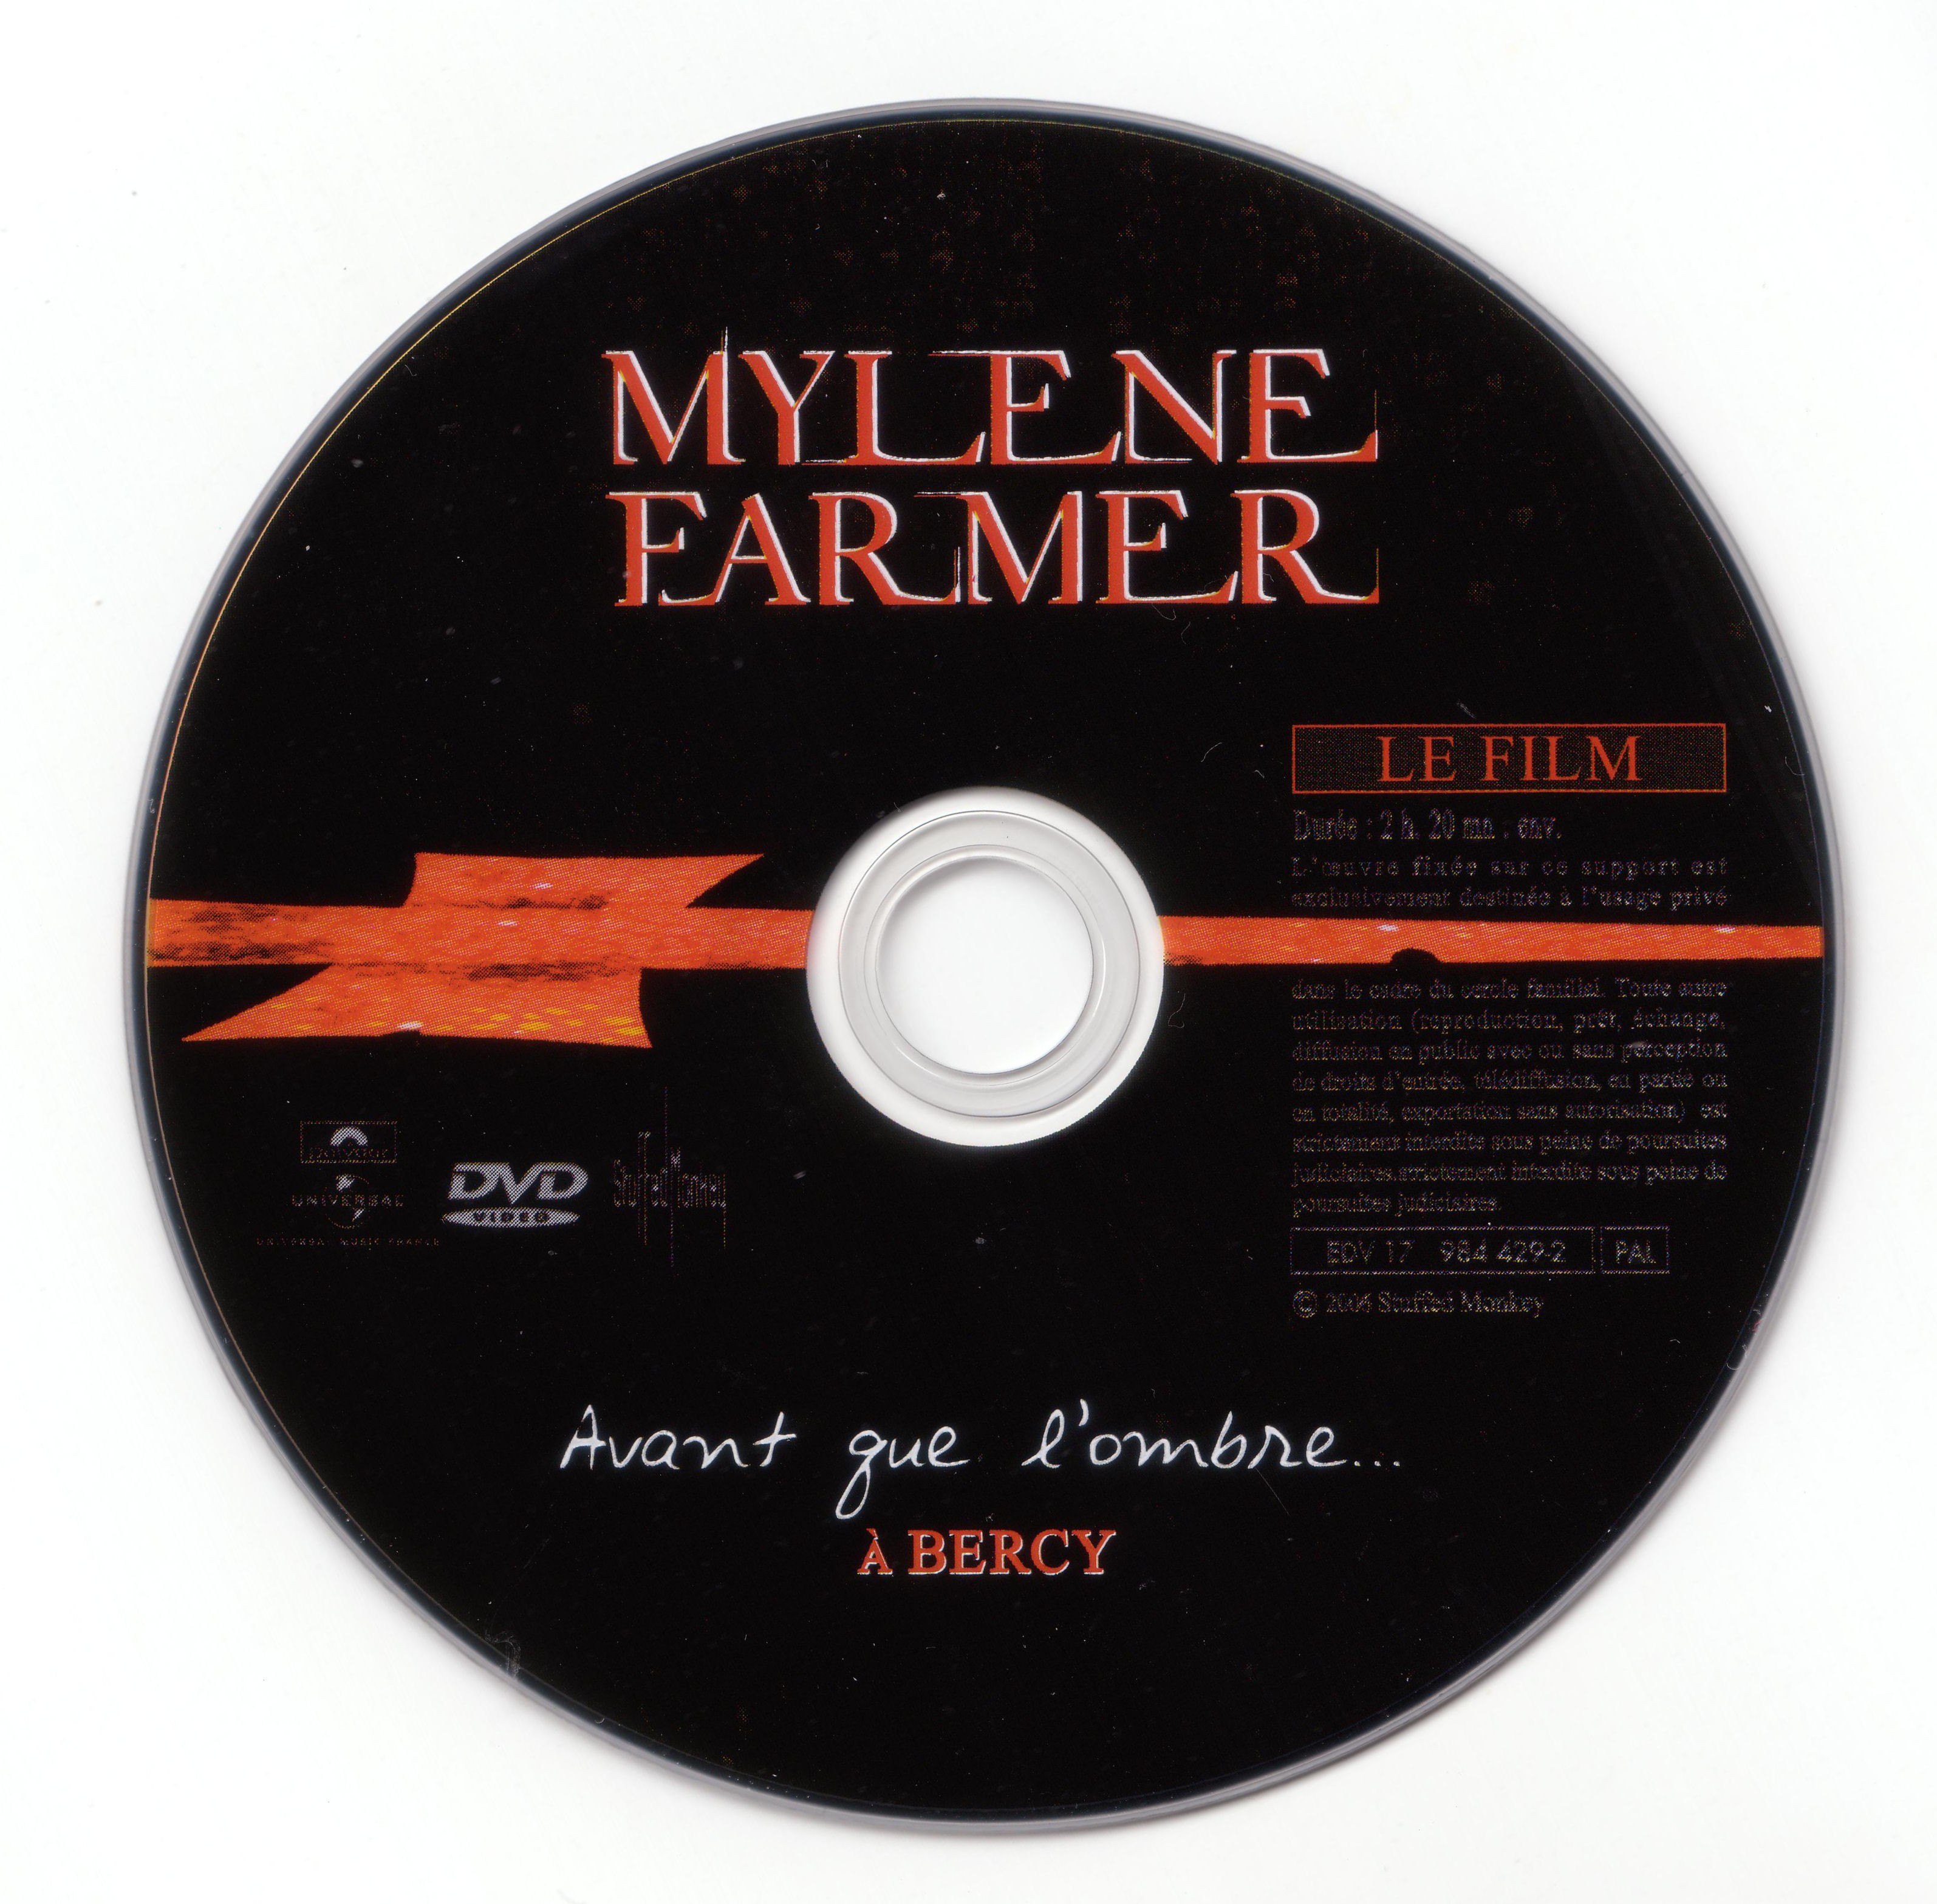 Mylene farmer Bercy 2006